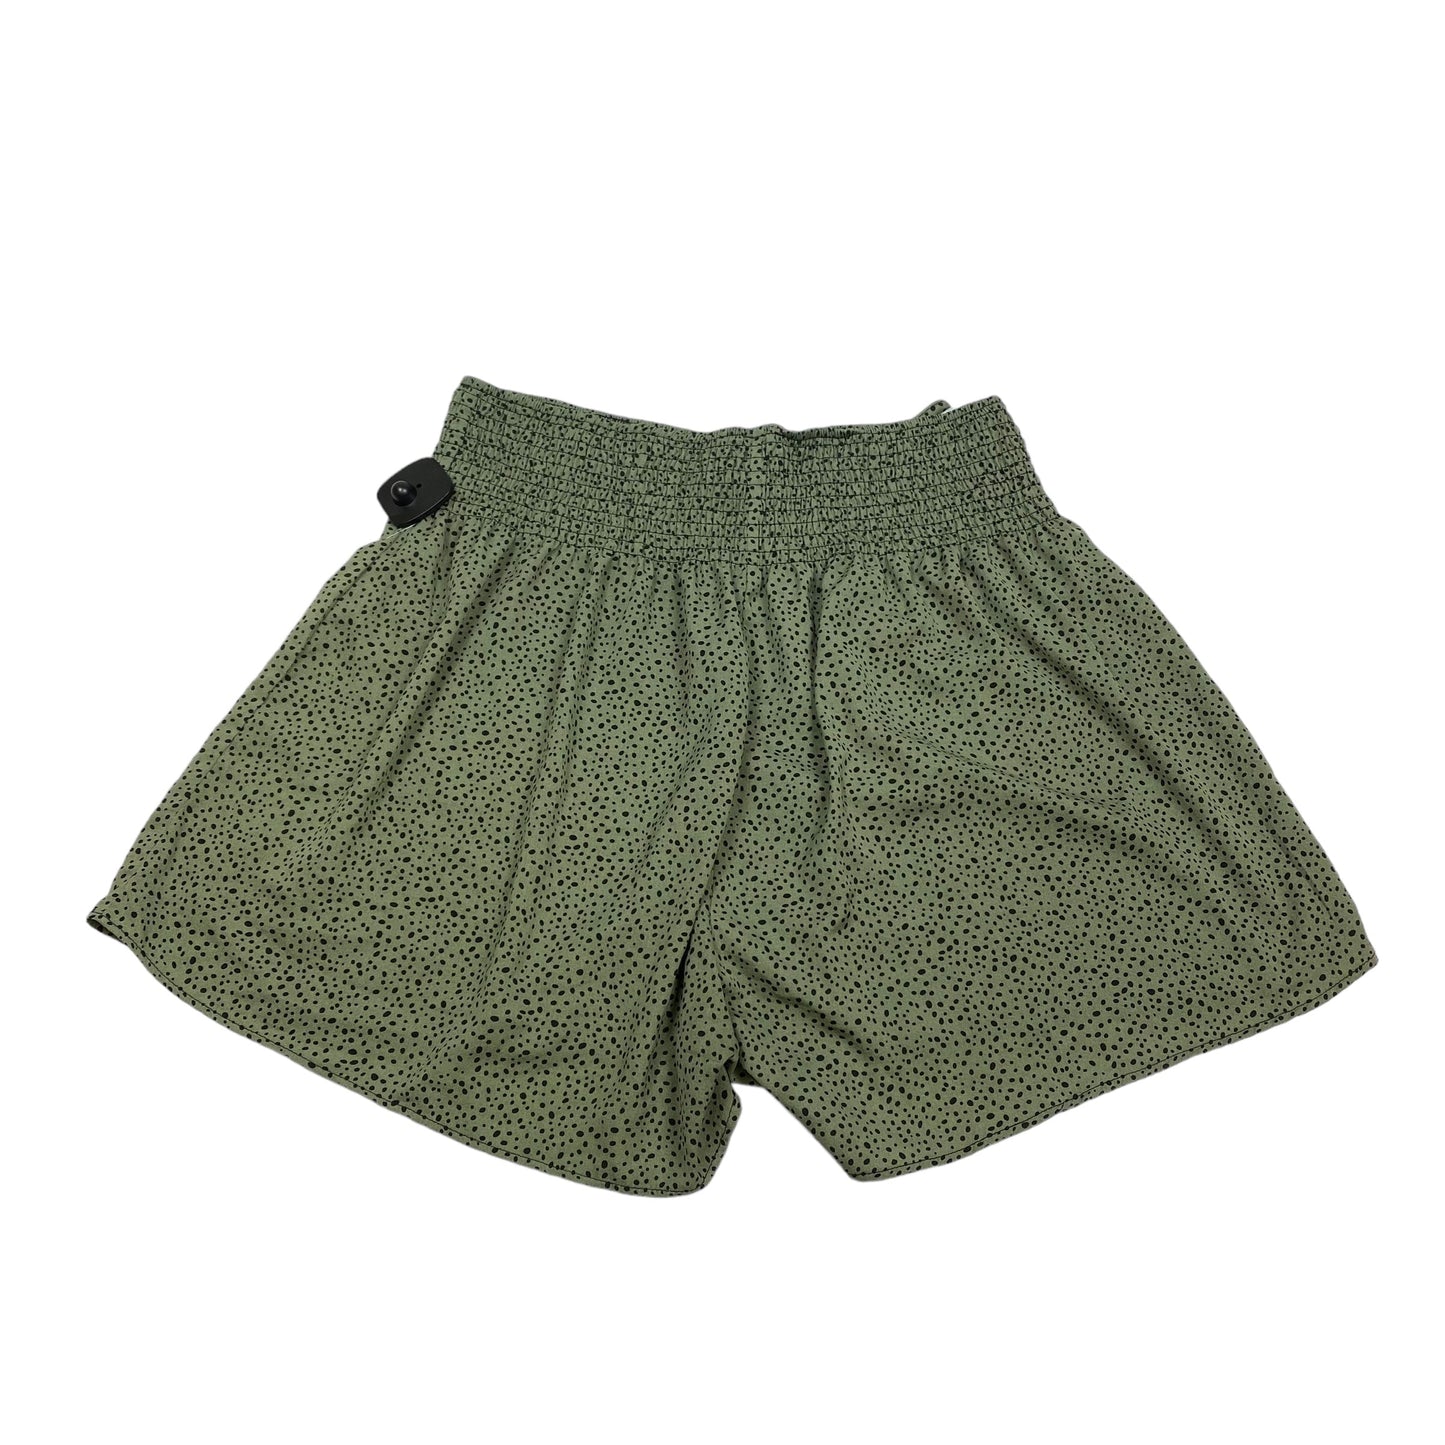 Green Shorts Shein, Size 2x